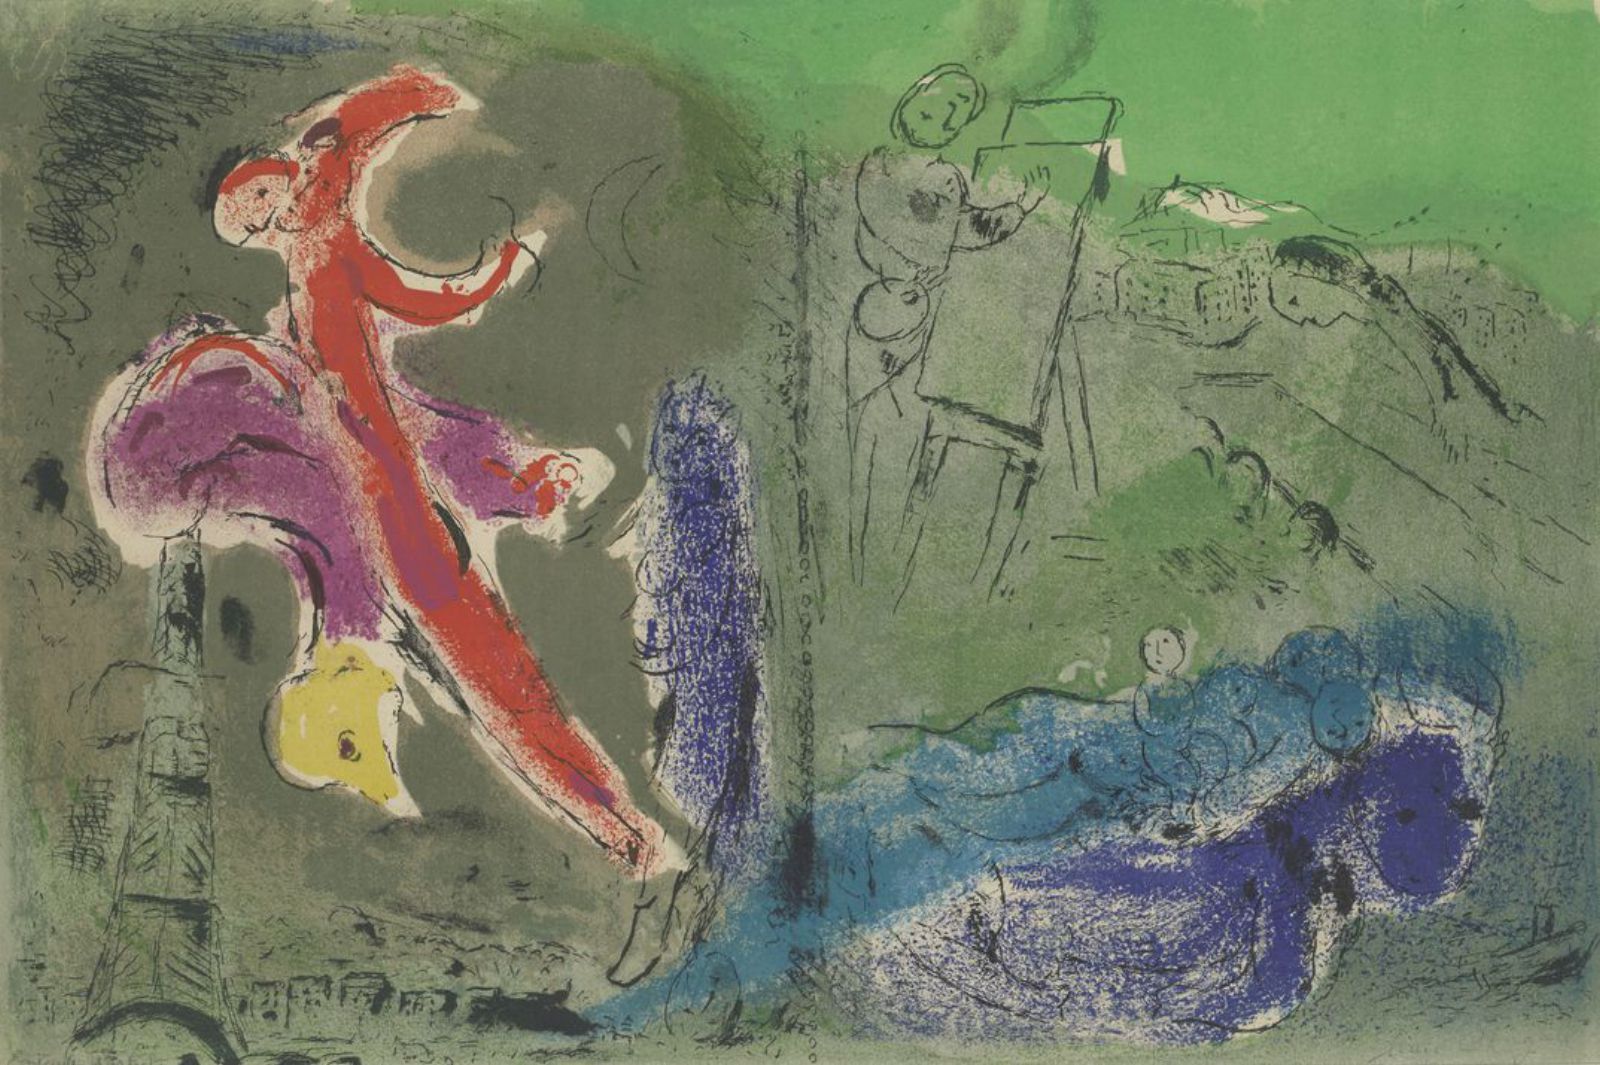 Litografía. “Visión de París”, en el número 27-28 de verve, de Marc Chagall.